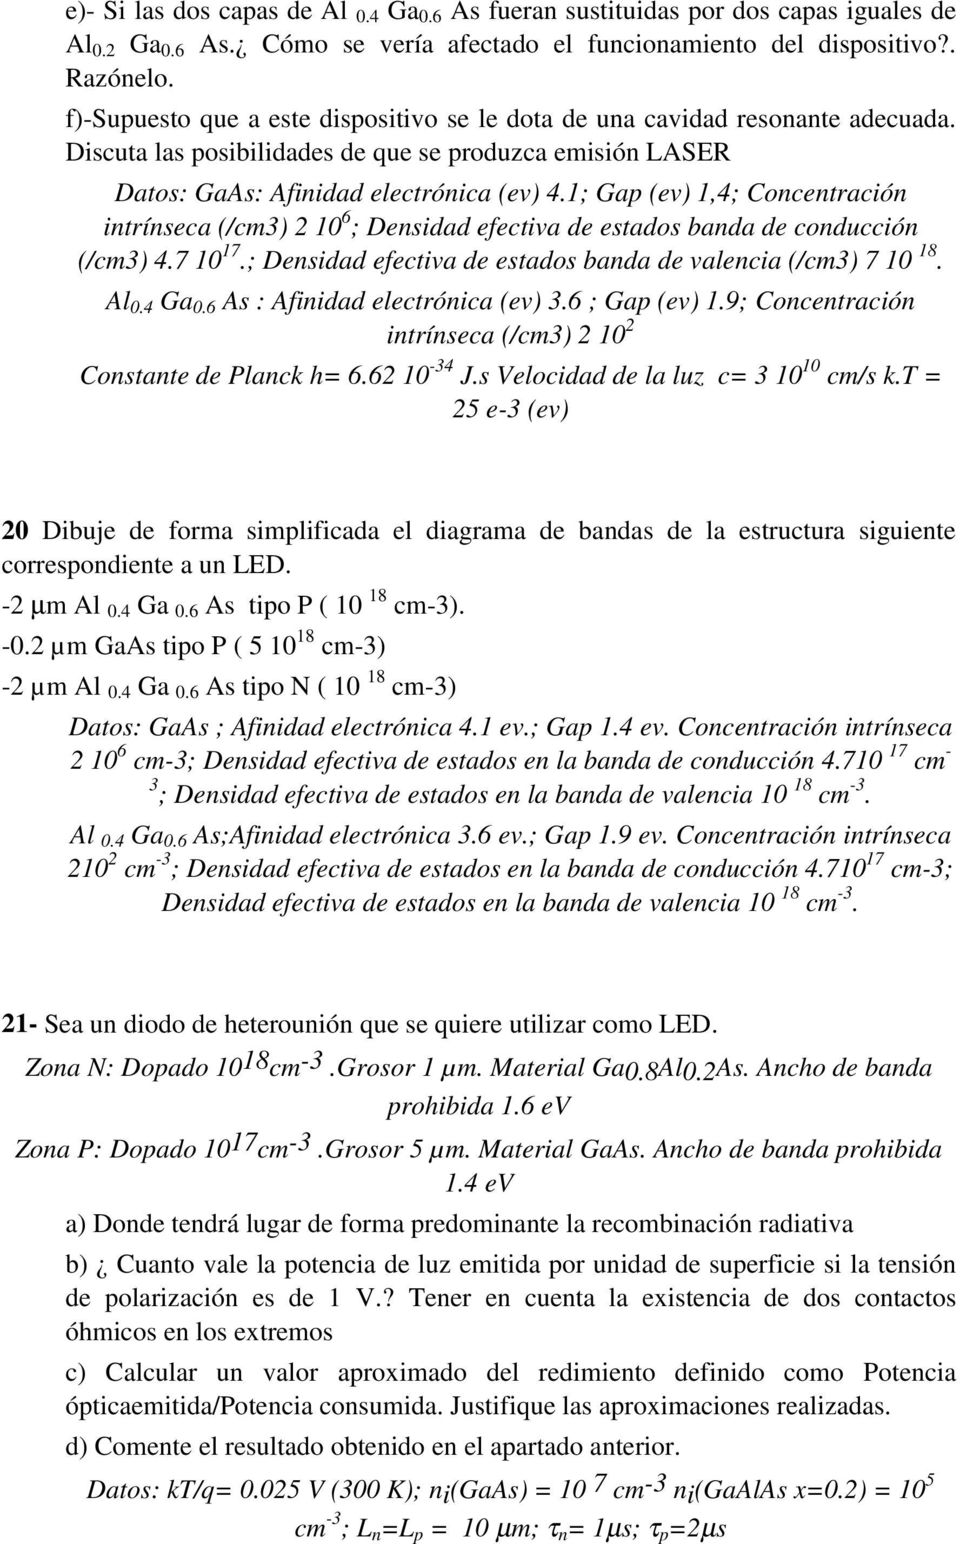 1; Gap (ev) 1,4; Concentración intrínseca (/cm3) 2 10 6 ; Densidad efectiva de estados banda de conducción (/cm3) 4.7 10 17.; Densidad efectiva de estados banda de valencia (/cm3) 7 10 18. Al 0.